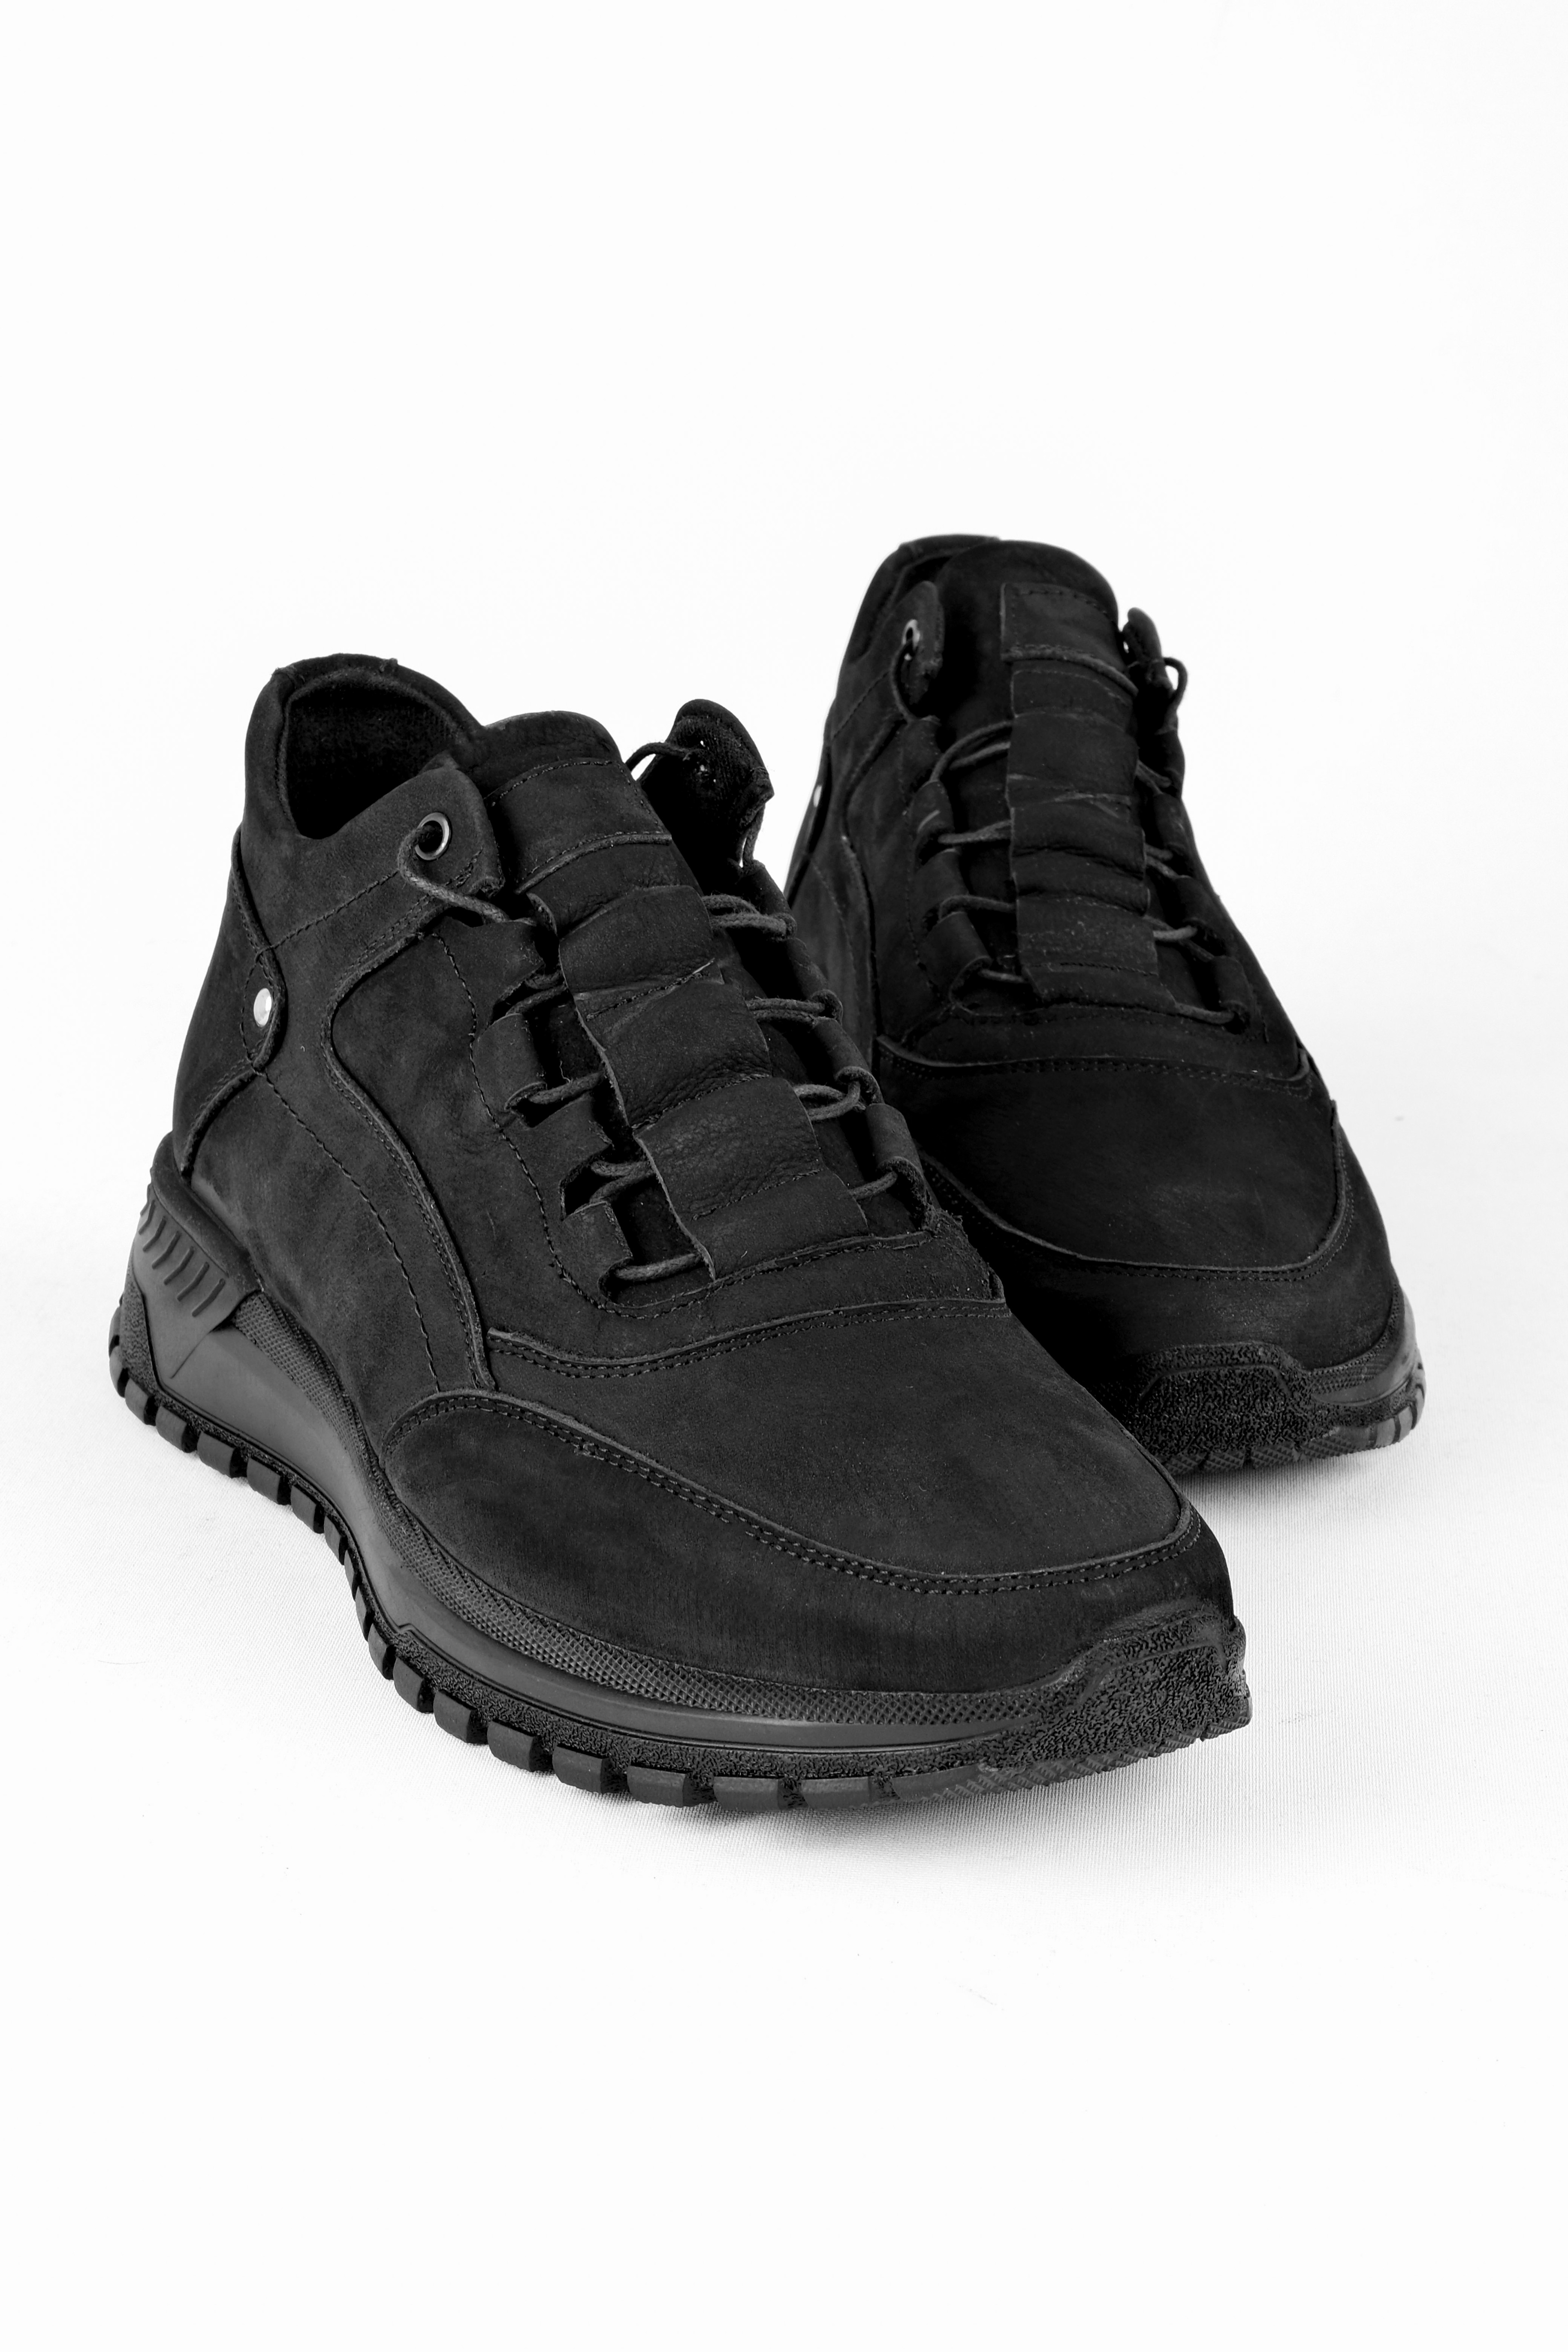 Raxel Hakiki Deri Erkek Ayakkabı Yarım Kısa Bot - S.Siyah